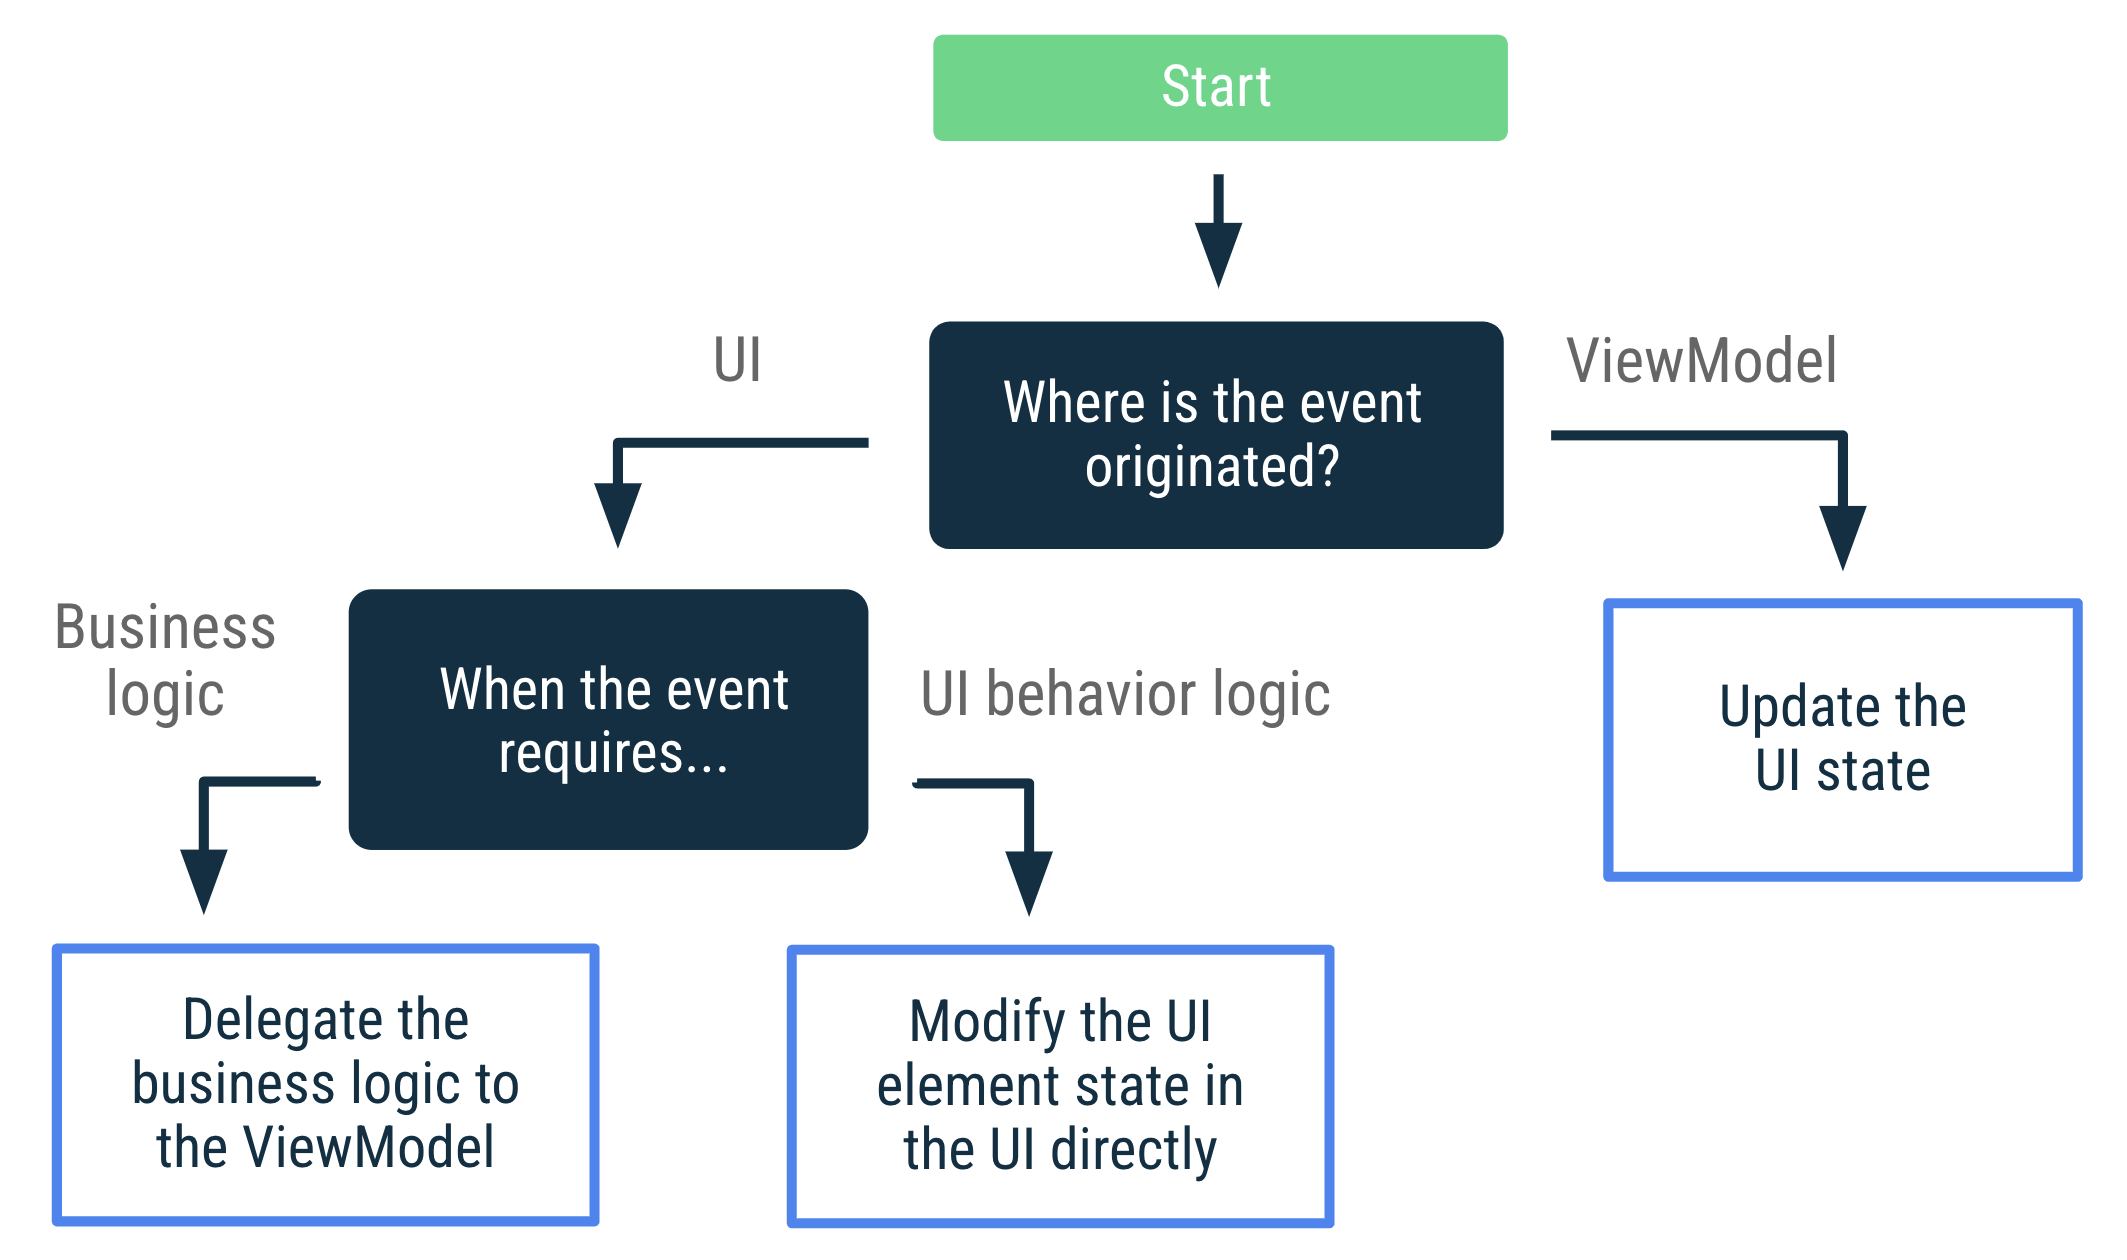 Jika peristiwa berasal dari ViewModel, update status UI. Jika
    peristiwa berasal dari UI dan memerlukan logika bisnis, delegasikan
    logika bisnis ke ViewModel. Jika peristiwa berasal dari UI dan
    memerlukan logika perilaku UI, ubah status elemen UI secara langsung di
    UI.